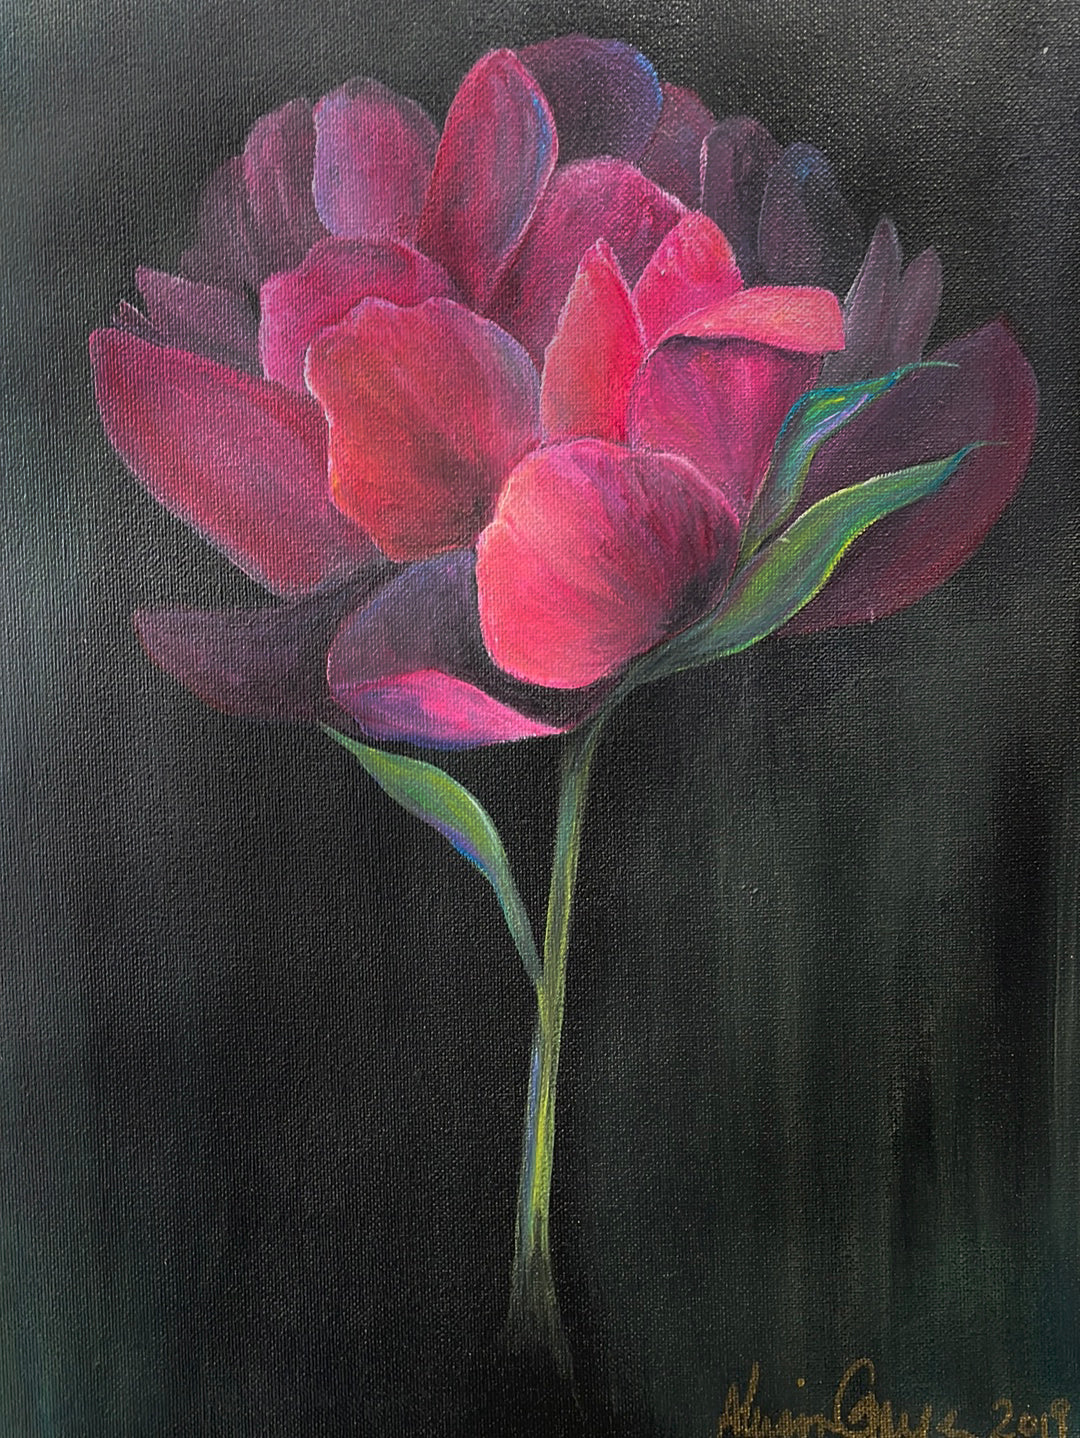 Flower Two by Allison Grainger